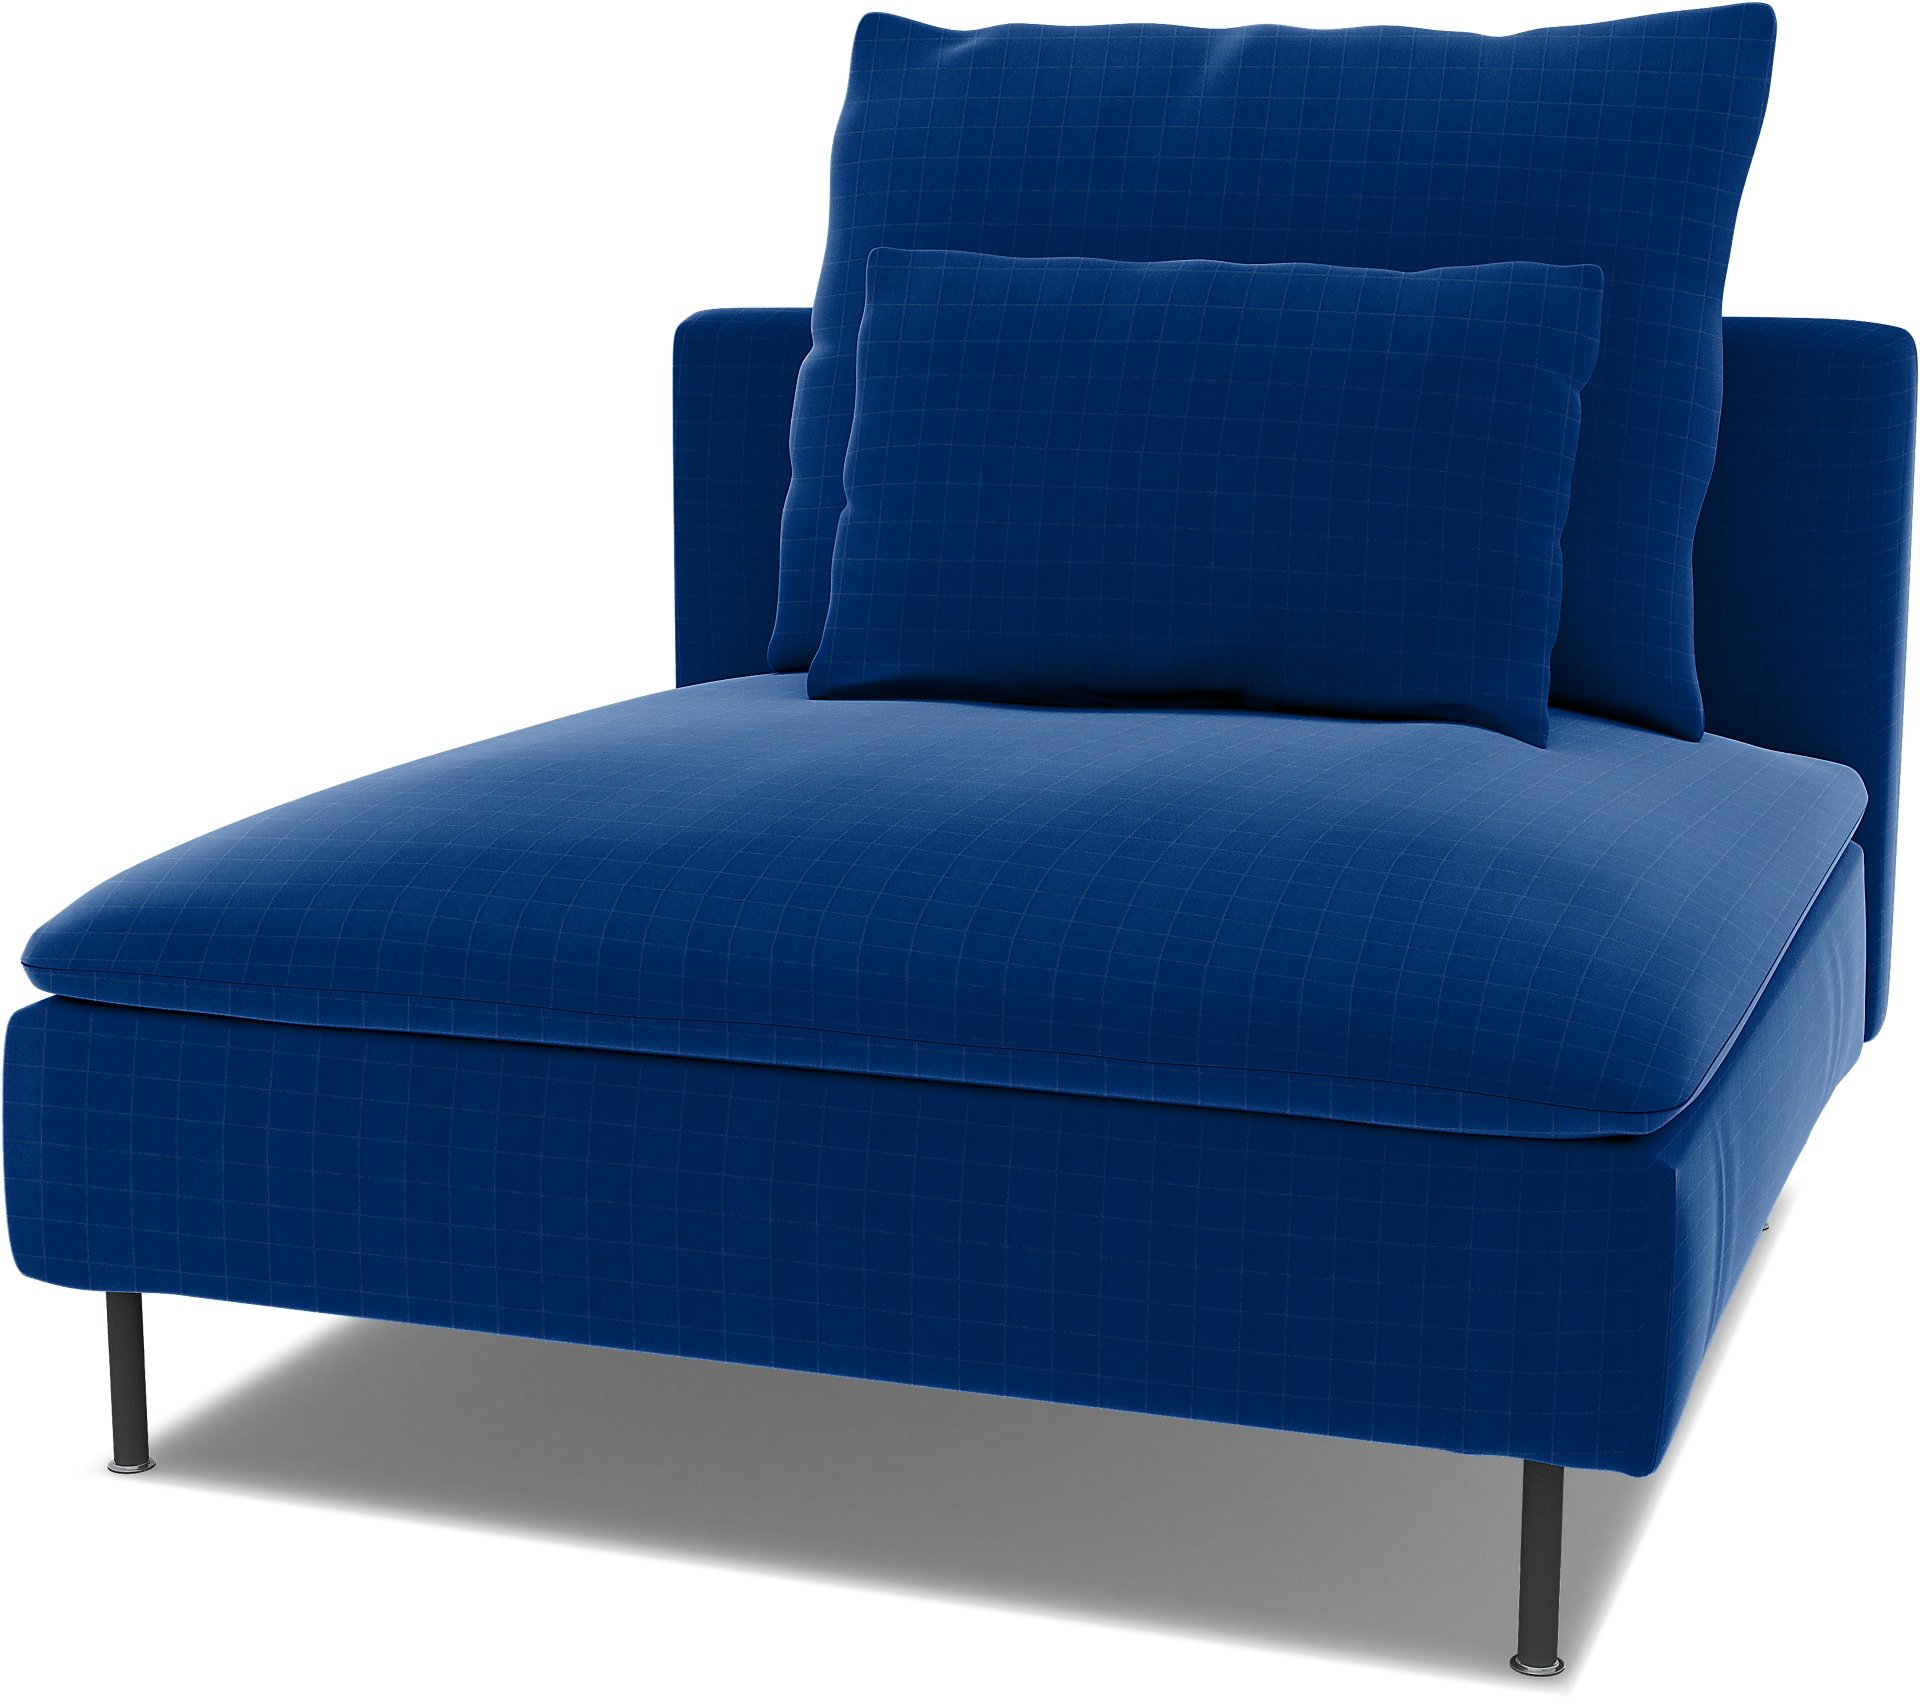 Spare back cushion cover for SODERHAMN 1 SEAT SECTION, Lapis Blue, Velvet - Bemz